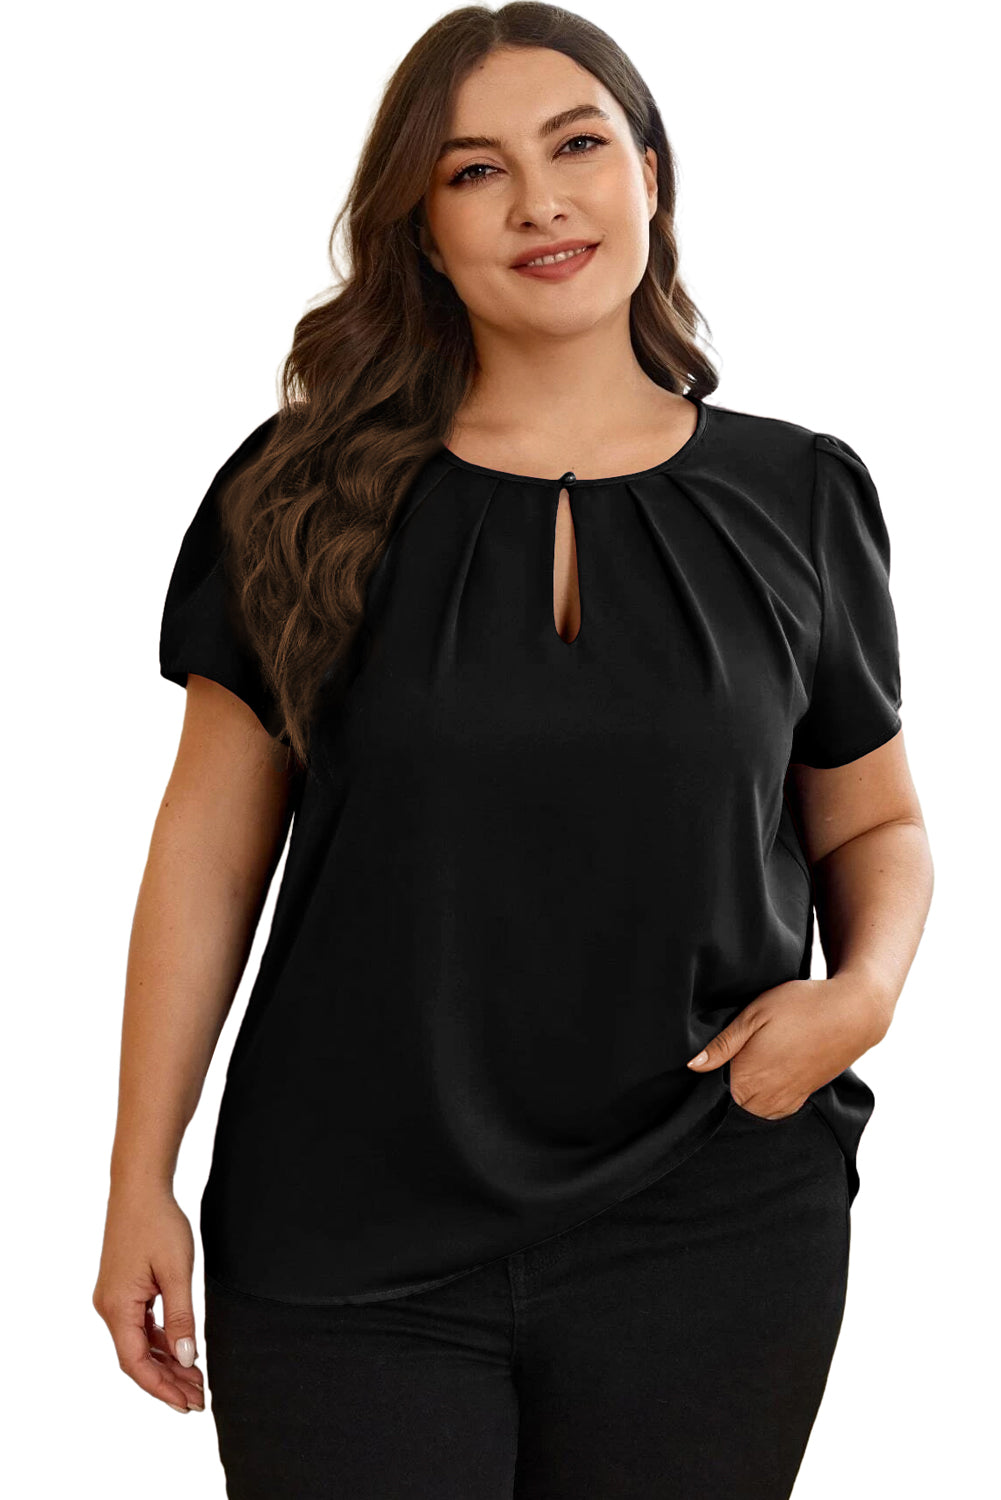 Crna majica velikih veličina s okruglim izrezom i nabranim ključanicama